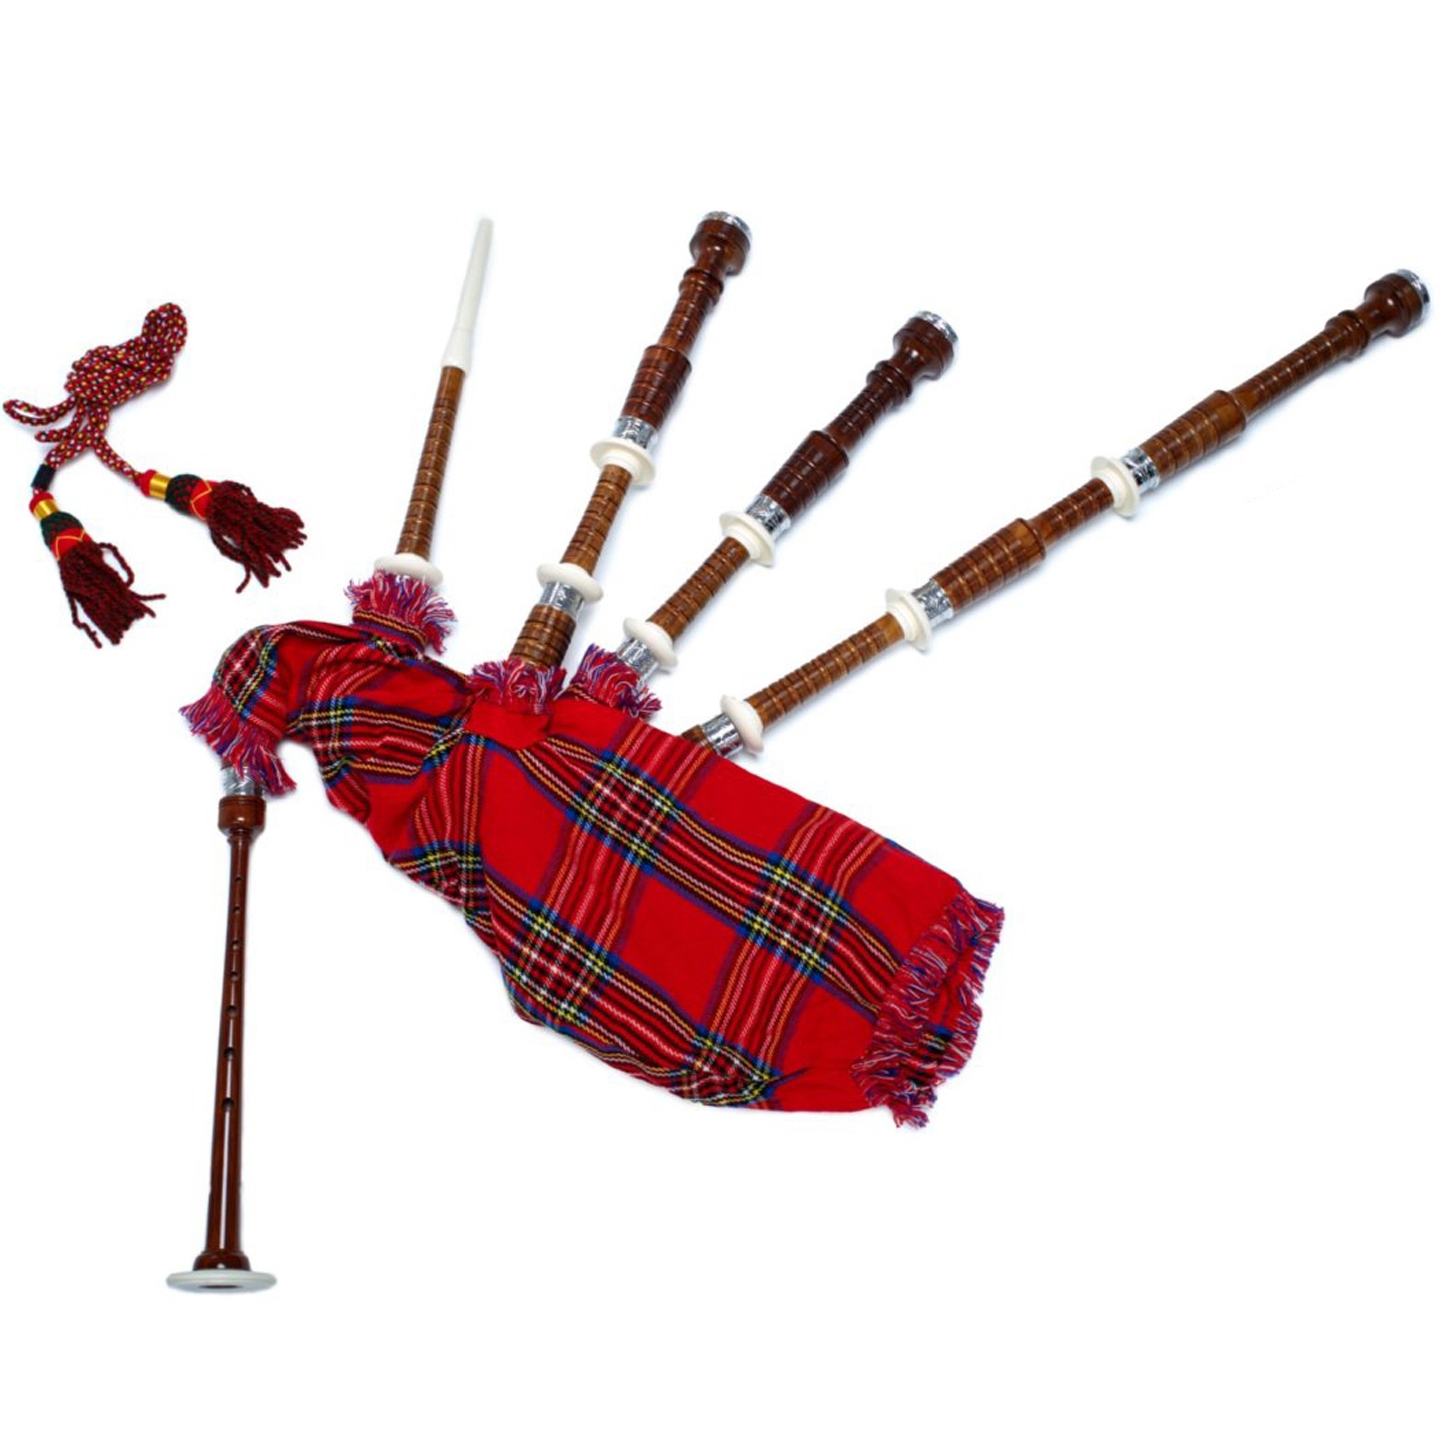 Chanterelle de grande cornemuse écossaise en bois de rose naturel avec 2 anches synthétiques offertes